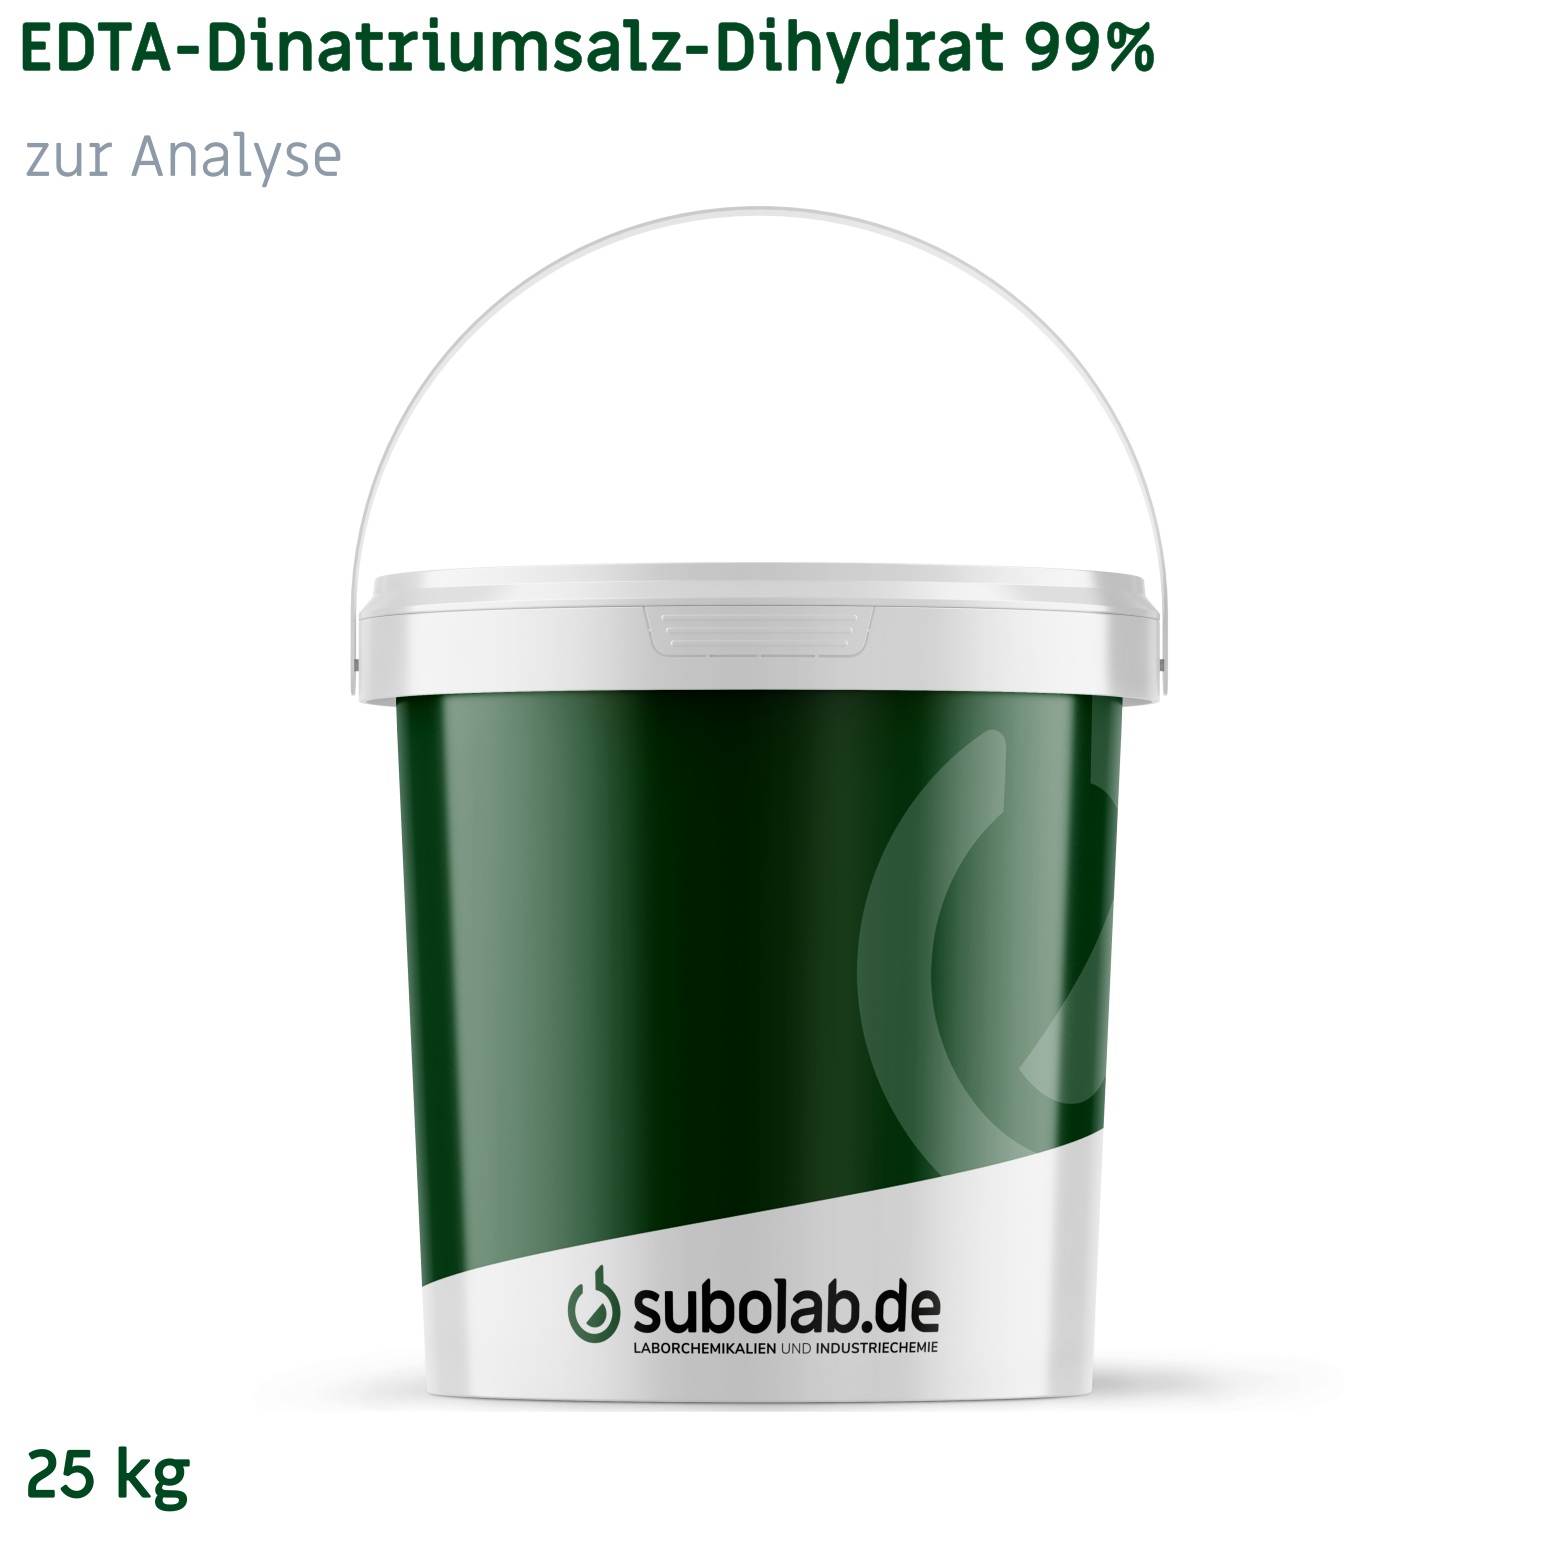 Bild von EDTA - Dinatriumsalz - Dihydrat 99% zur Analyse (25 kg)